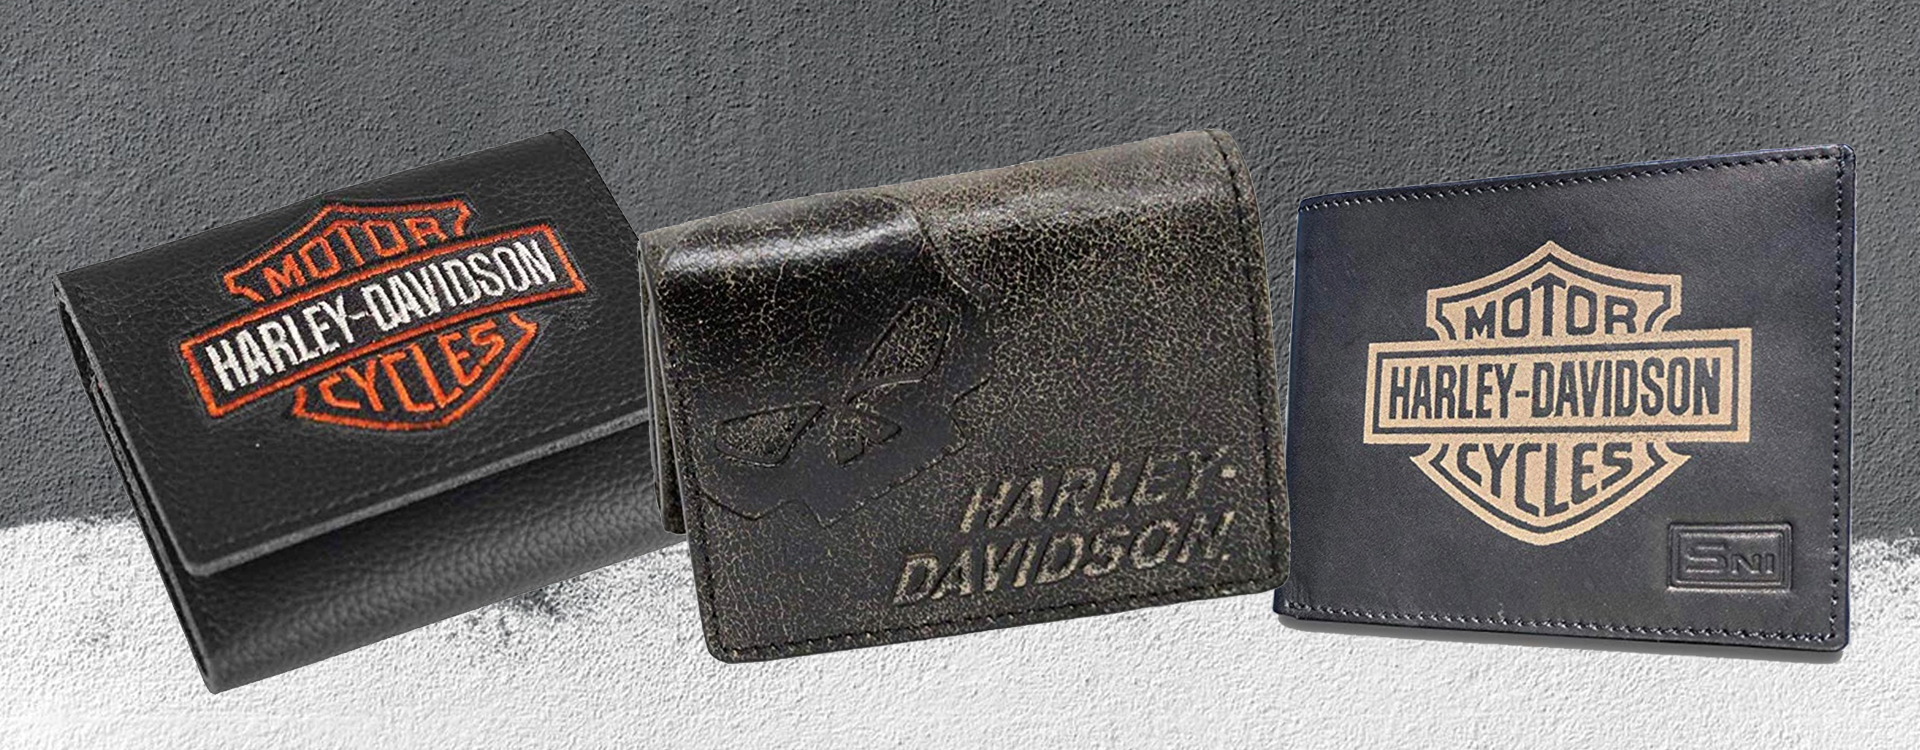 isolation lawyer Match Best Men's Harley Davidson Wallets & Card Cases | Badass Helmet Store